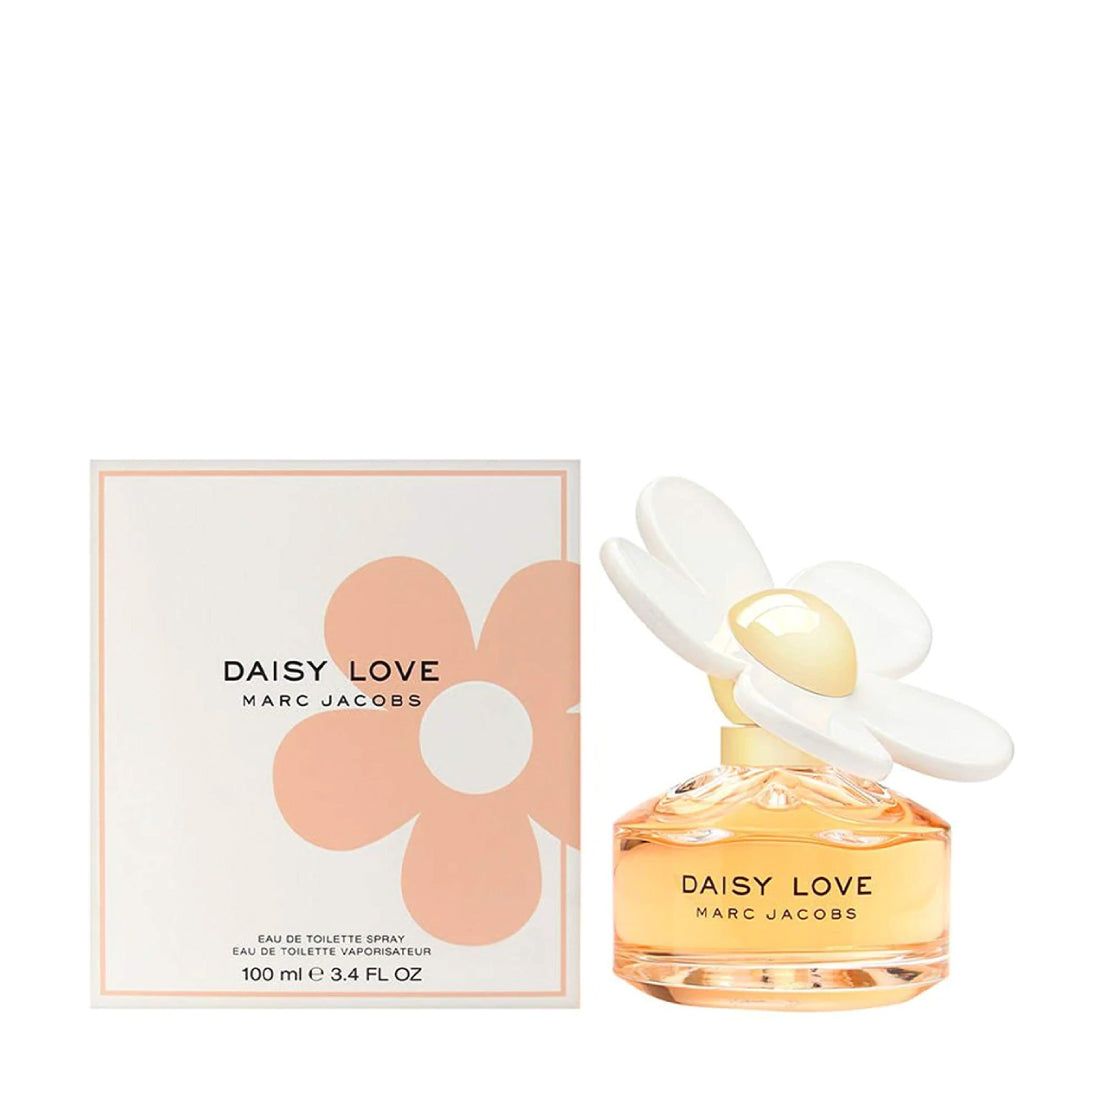 Daisy Love For Women Eau Plus Jacobs Outlet By Spray – Toilette Perfume de Marc